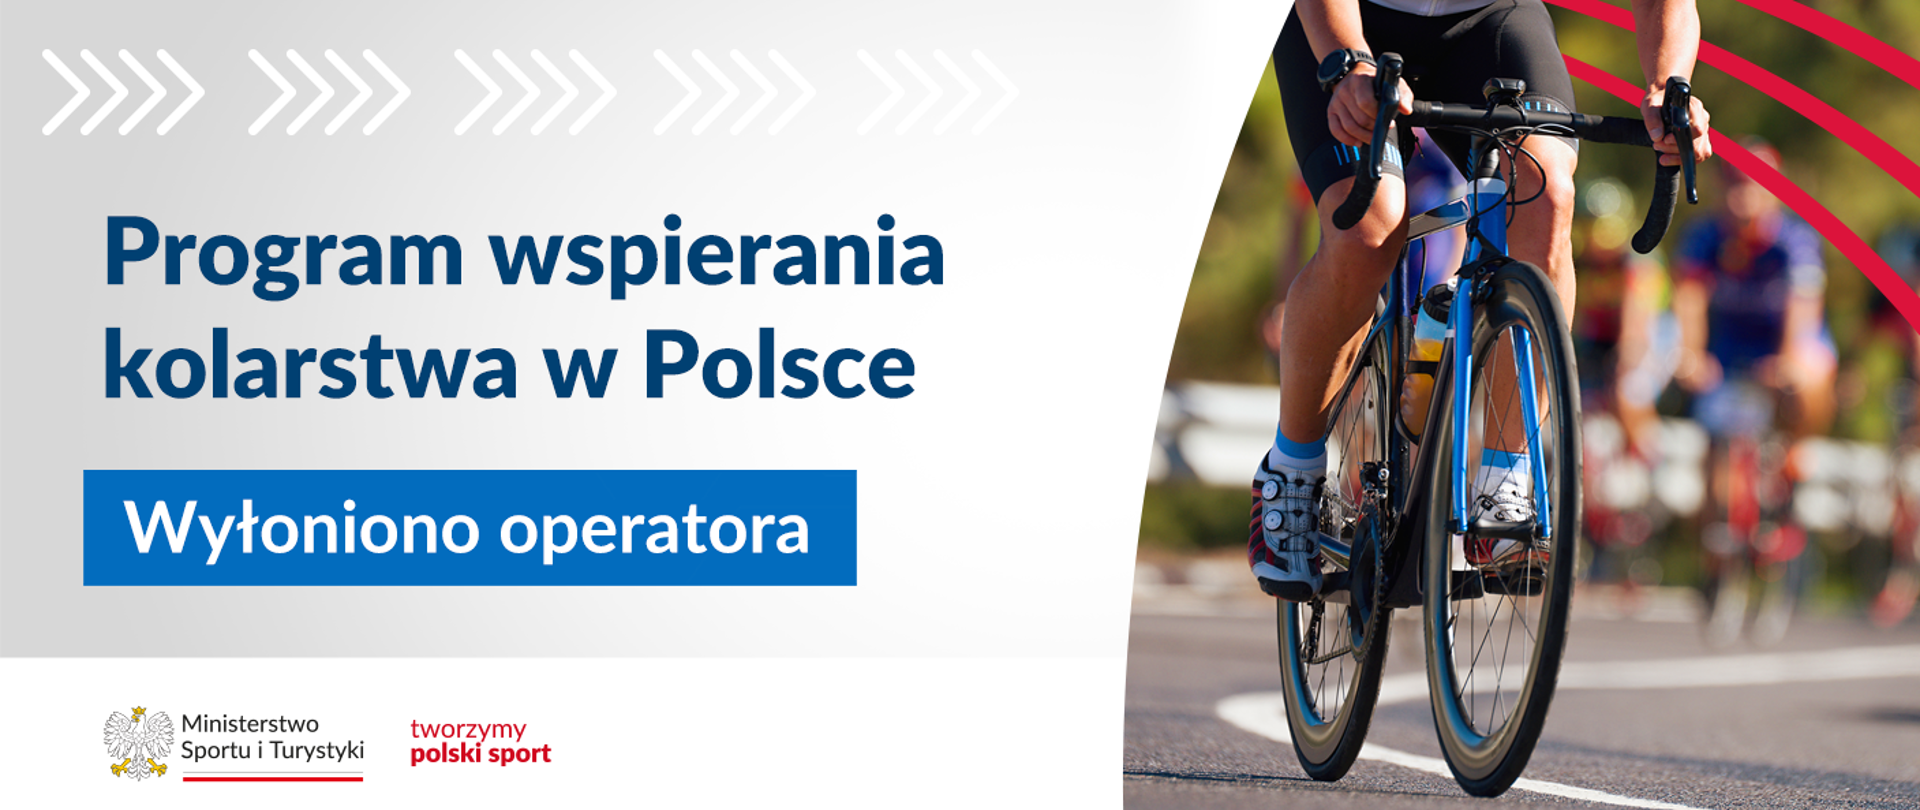 Wielkopolski Związek Kolarski został operatorem Programu wspierania kolarstwa w Polsce; grafika z napisem Program wspierania kolarstwa w Polsce - wyłoniono operatora; na zdjęciu rowerzysta na niebieskim rowerze, w czarnych, krótkich spodenkach, z tyłu za nim peleton